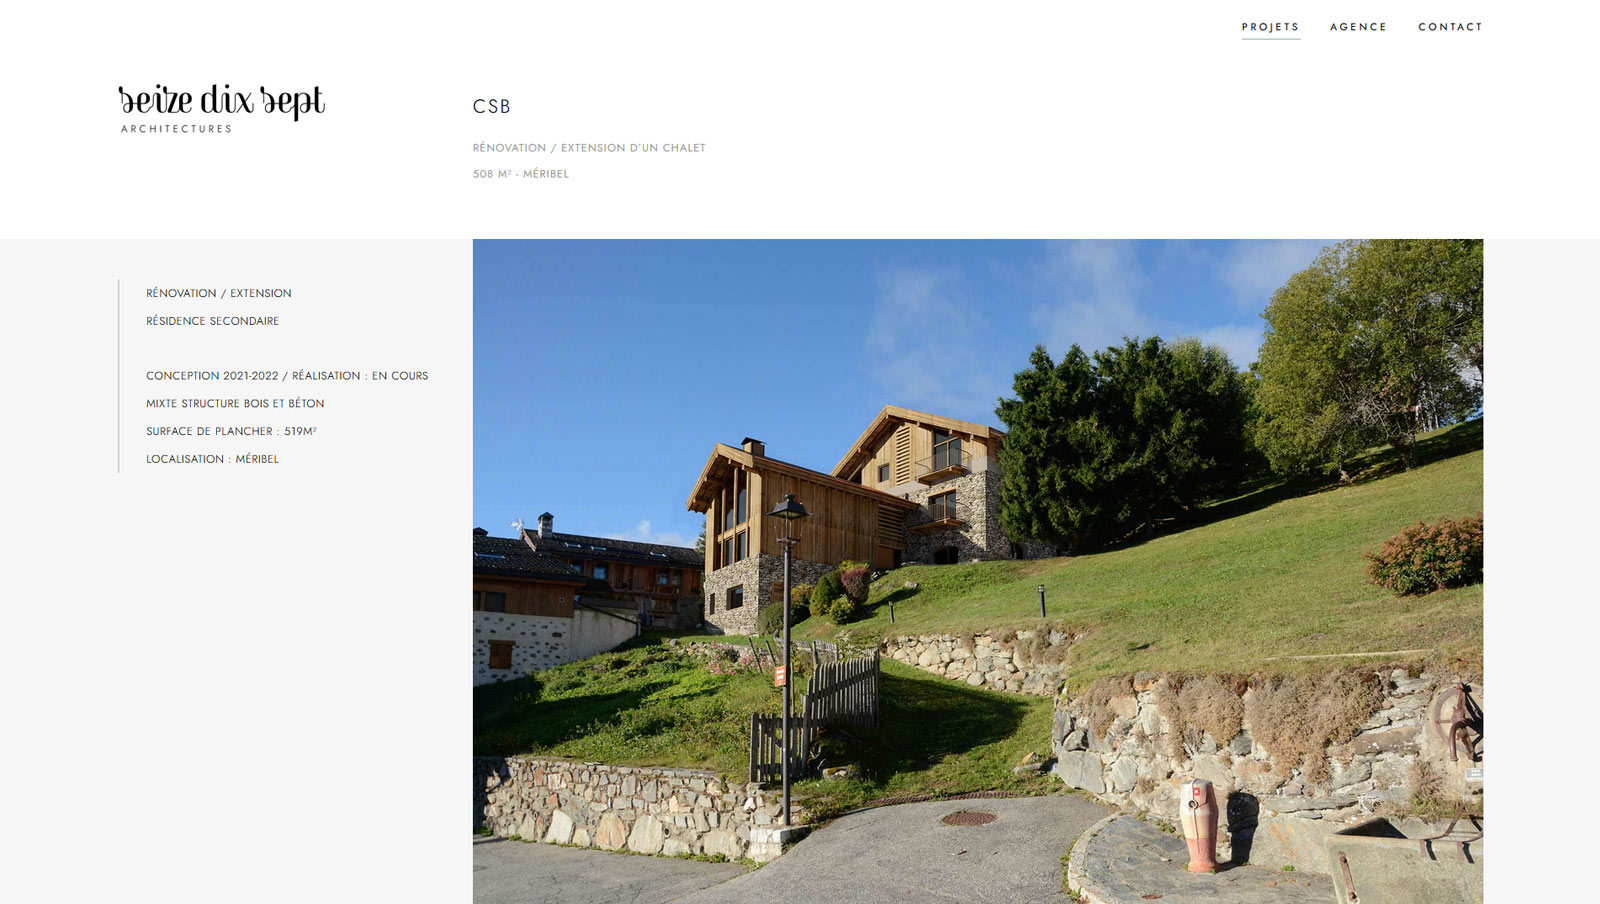 Création du site internet pour Seize Dix Sept à Moûtiers (Savoie), agence d'architecture, par Hervé Augoyat